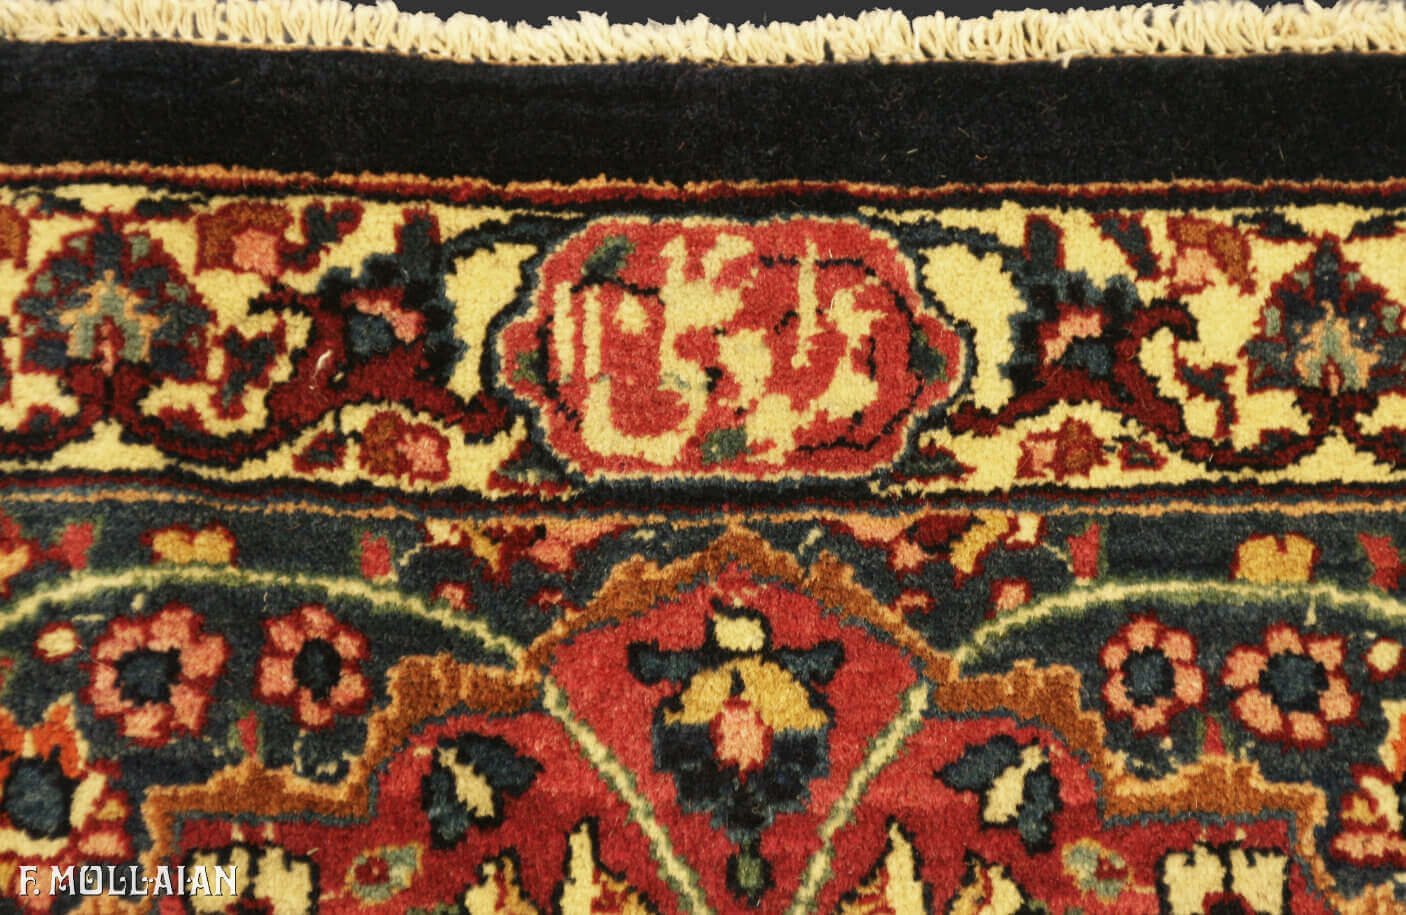 Antique Persian Mashad Amoghli Carpet n°:24222440